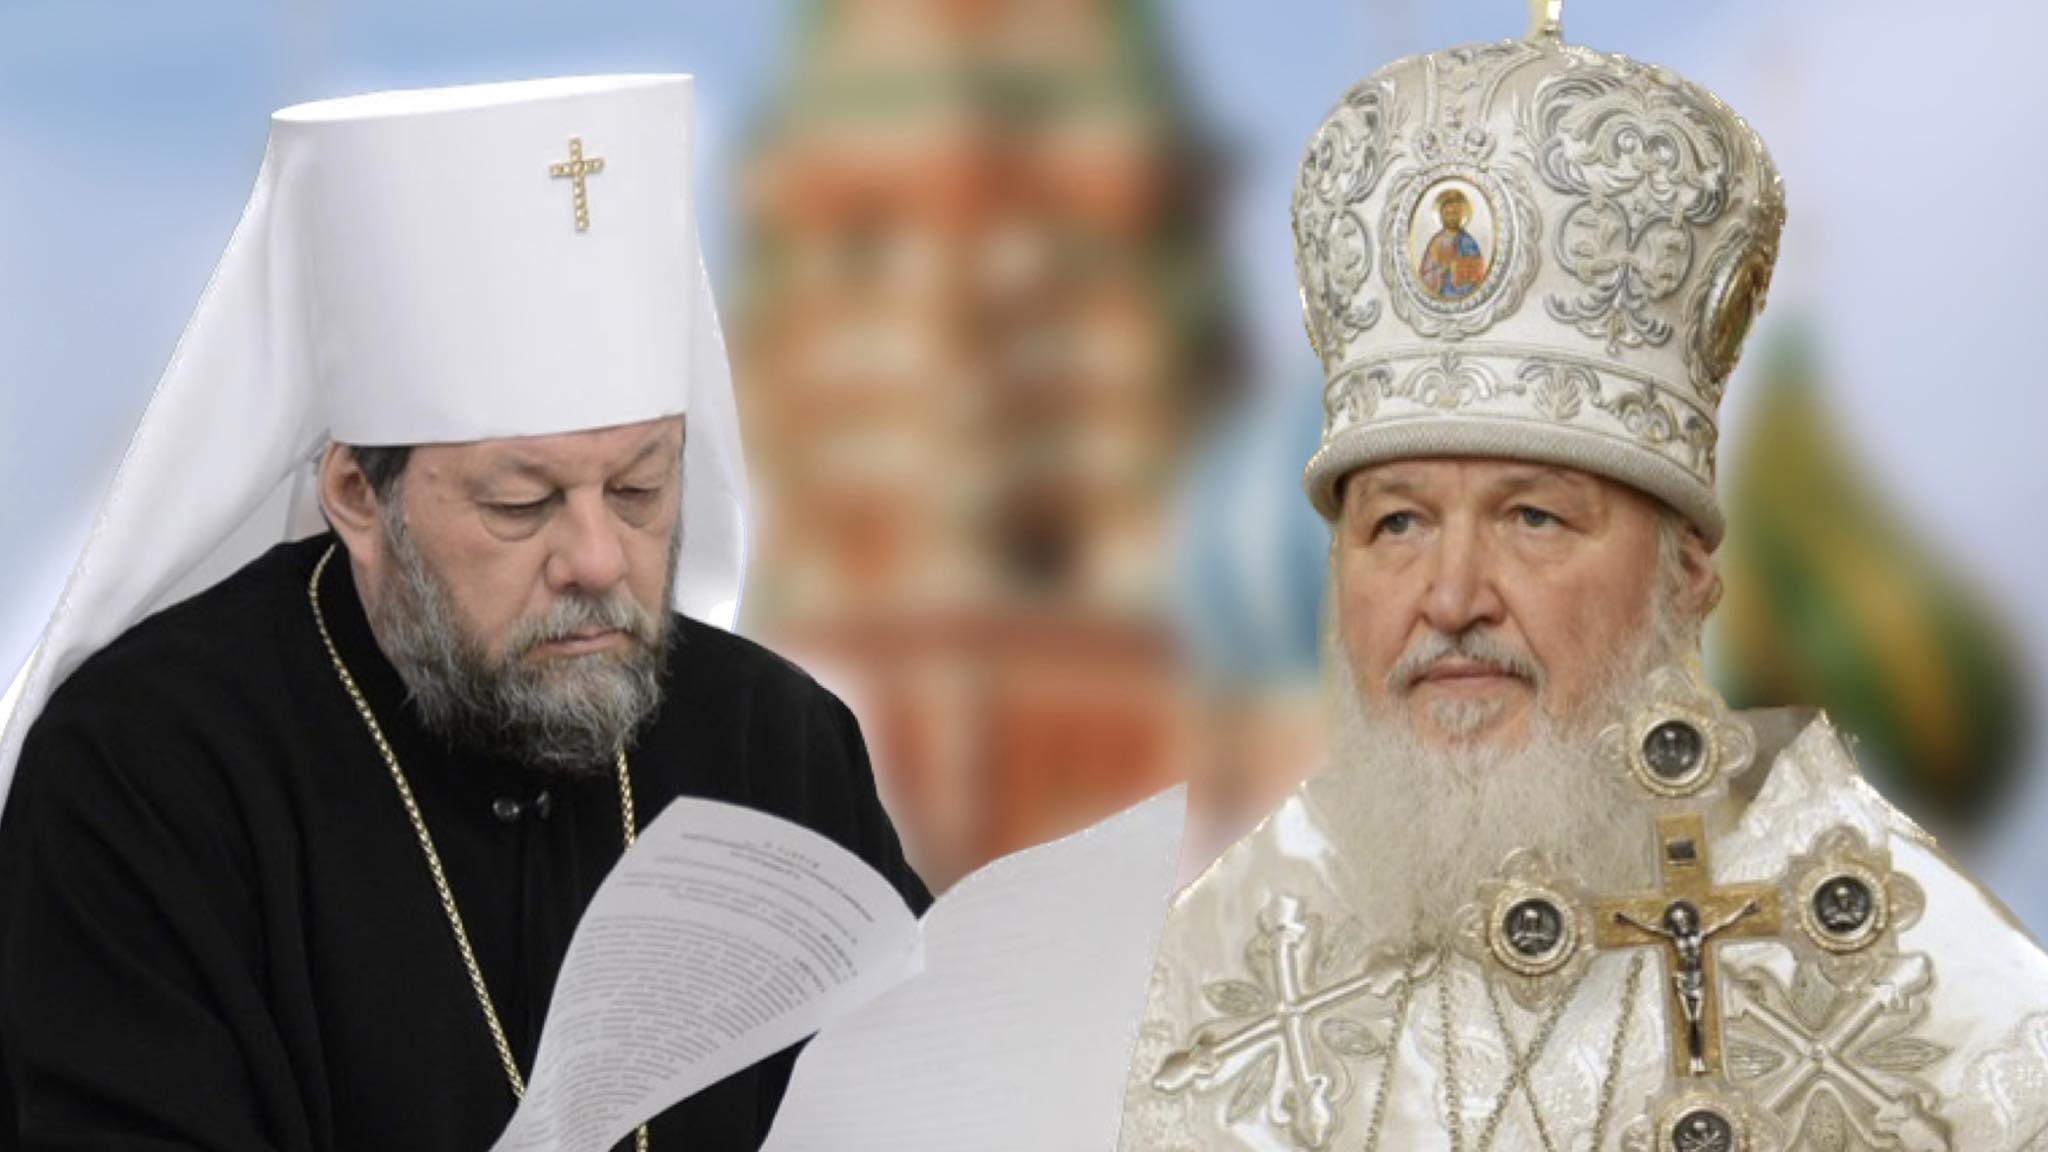 OPINIE | George Damian: Mitropolia Moldovei a Patriarhiei Ruse a intrat într-o vrie și încearcă să se redreseze cu ajutorul Patriarhiei Române